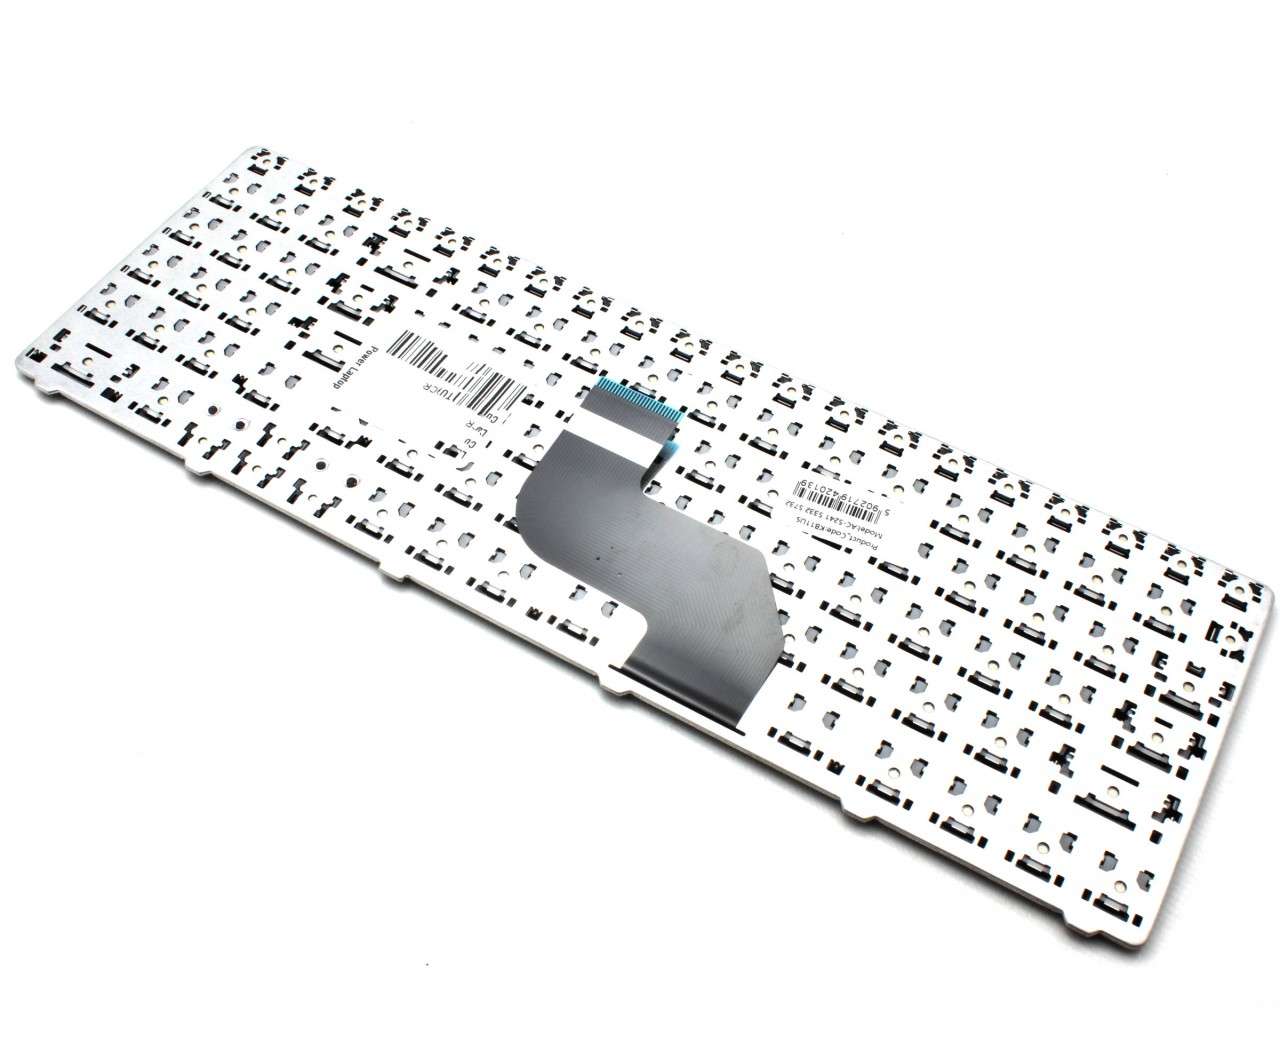 Tastatura Acer Aspire 5732g